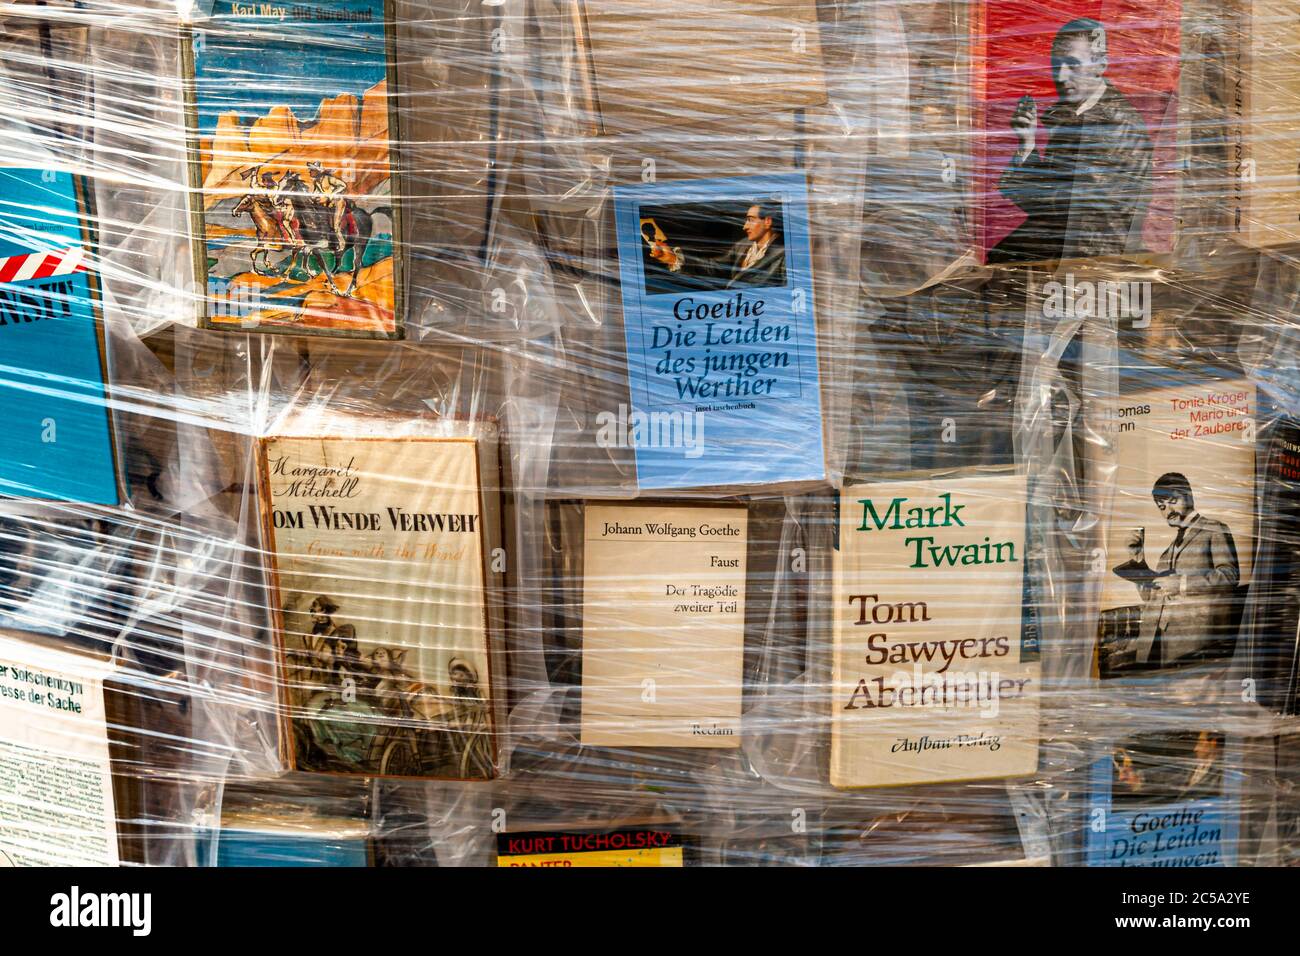 Parthen of Books auf der Documenta 2017 in Kassel. Die argentinische Künstlerin Marta Minujin hat unzählige Bücher über einen Parthenon auf einem Gerüst aufgestellt Stockfoto